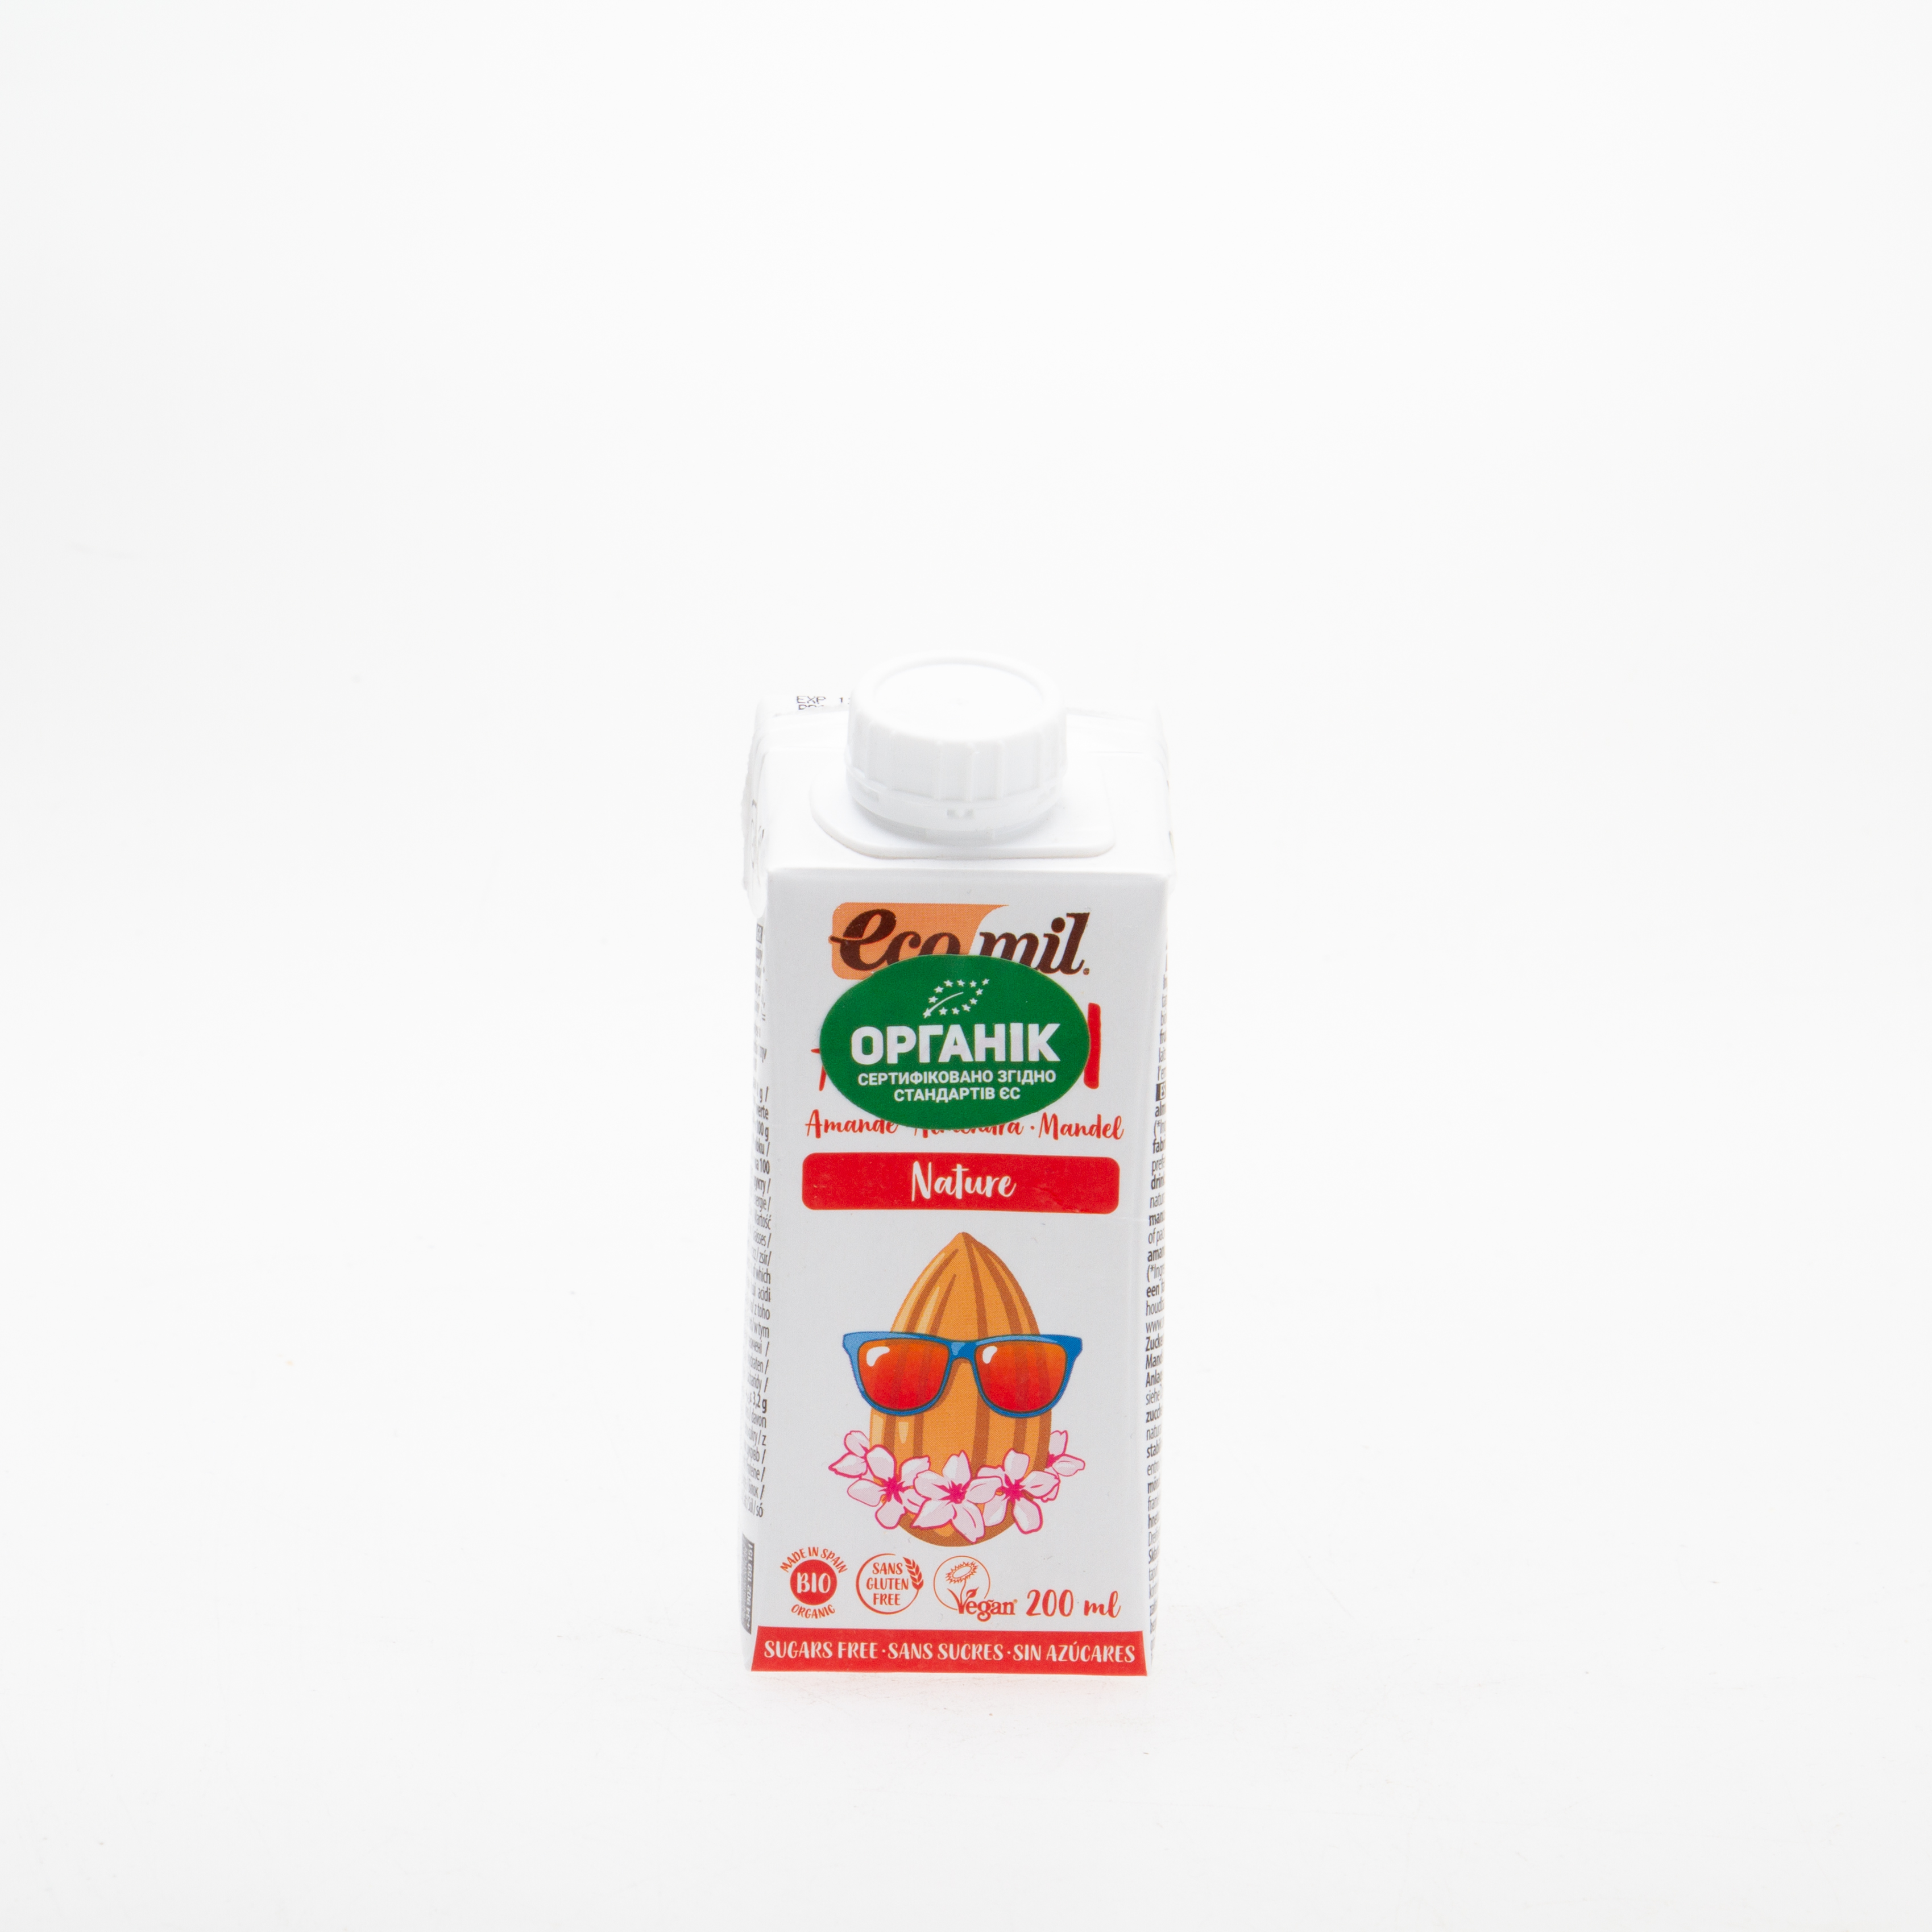 Органічне рослинне молоко з мигдалю без цукру 200 мл - купить в интернет-магазине Юнимед